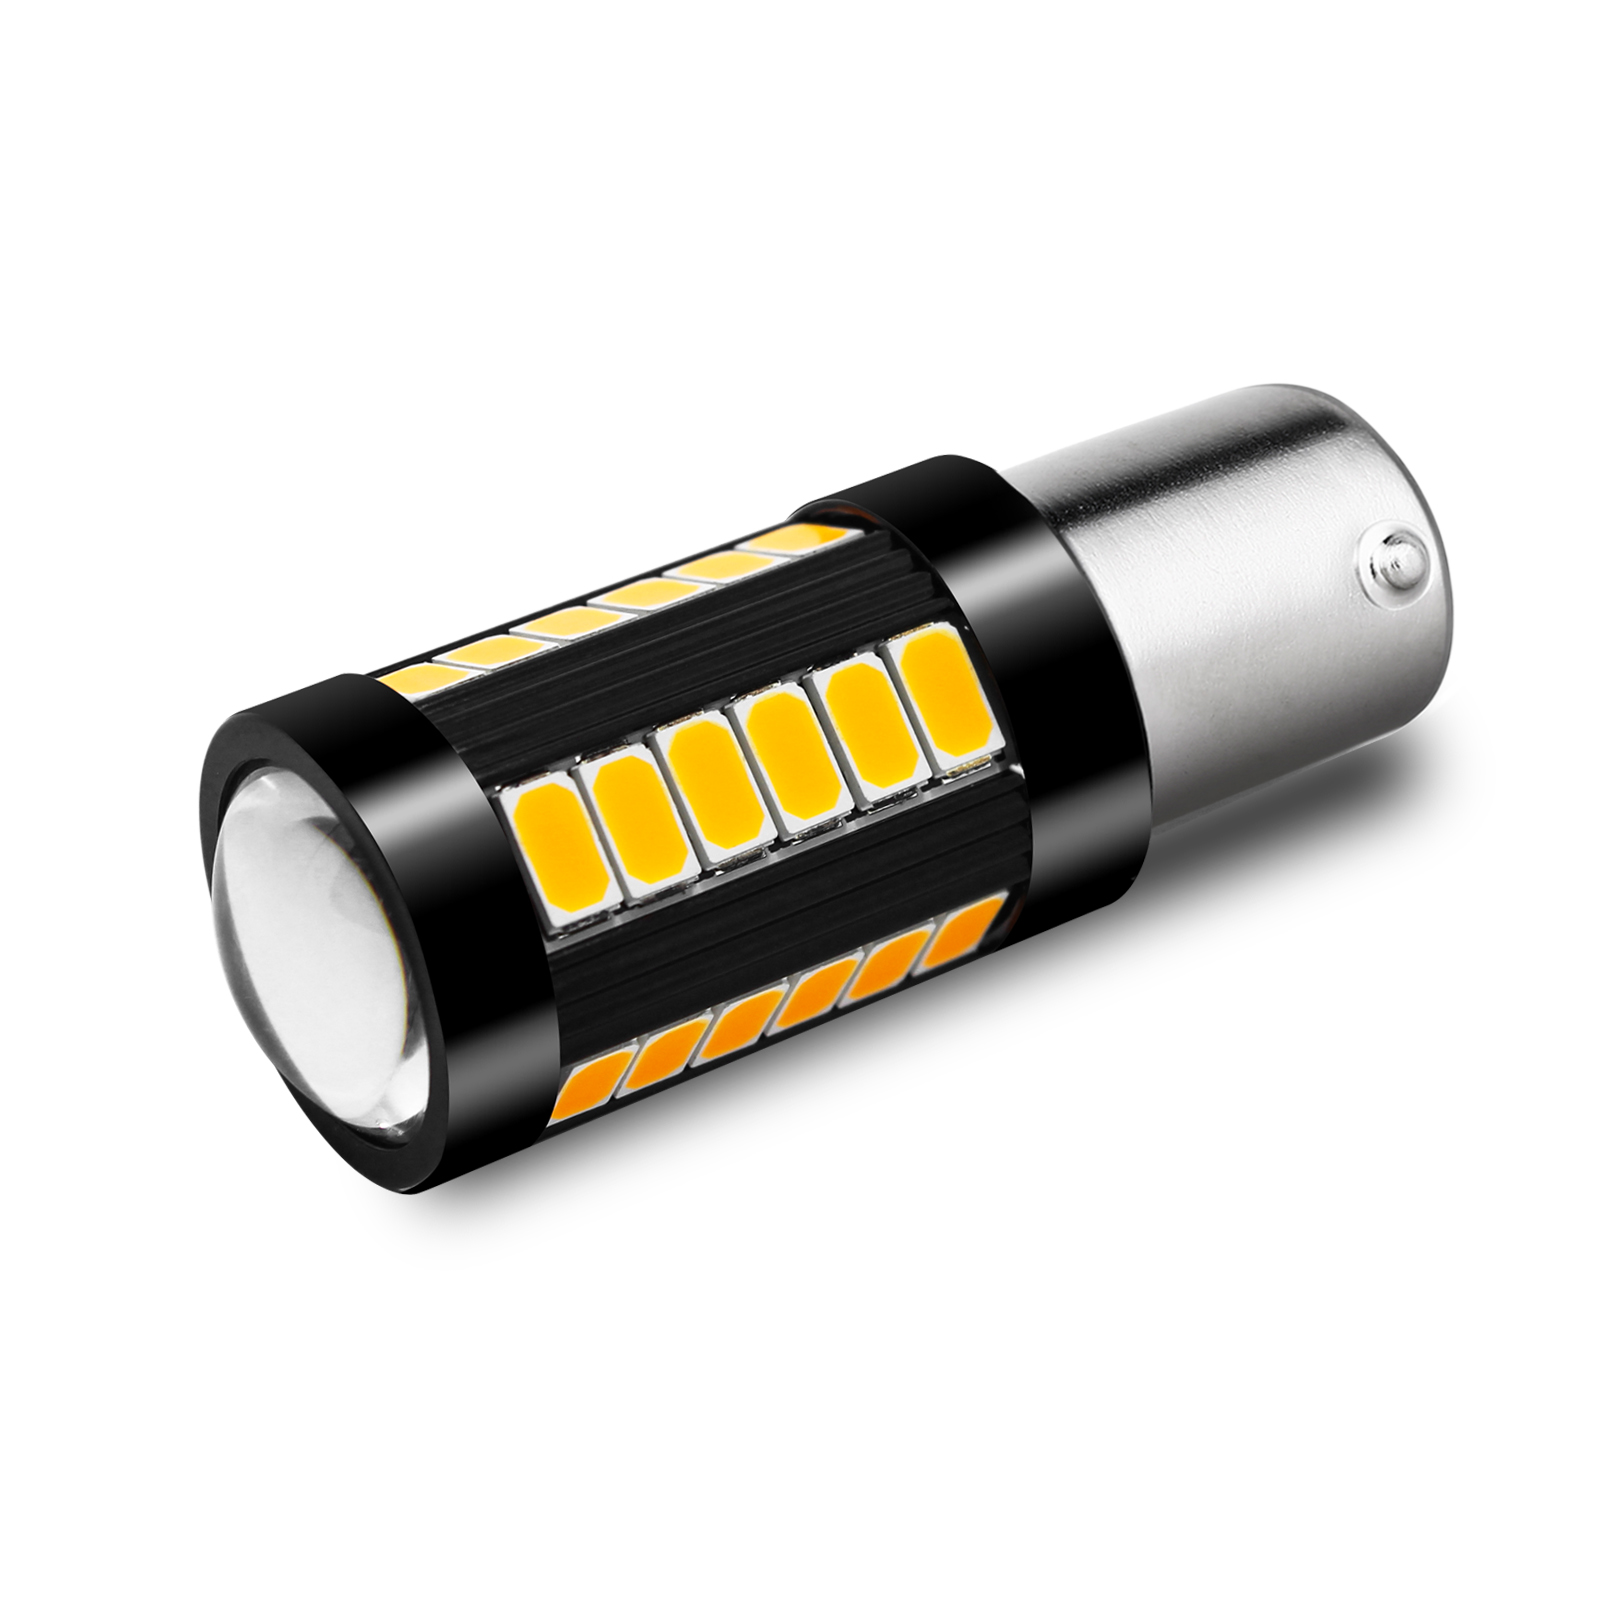 2015 Kia Optima LED Rear Turn Signal Light Bulb 12V Replacement